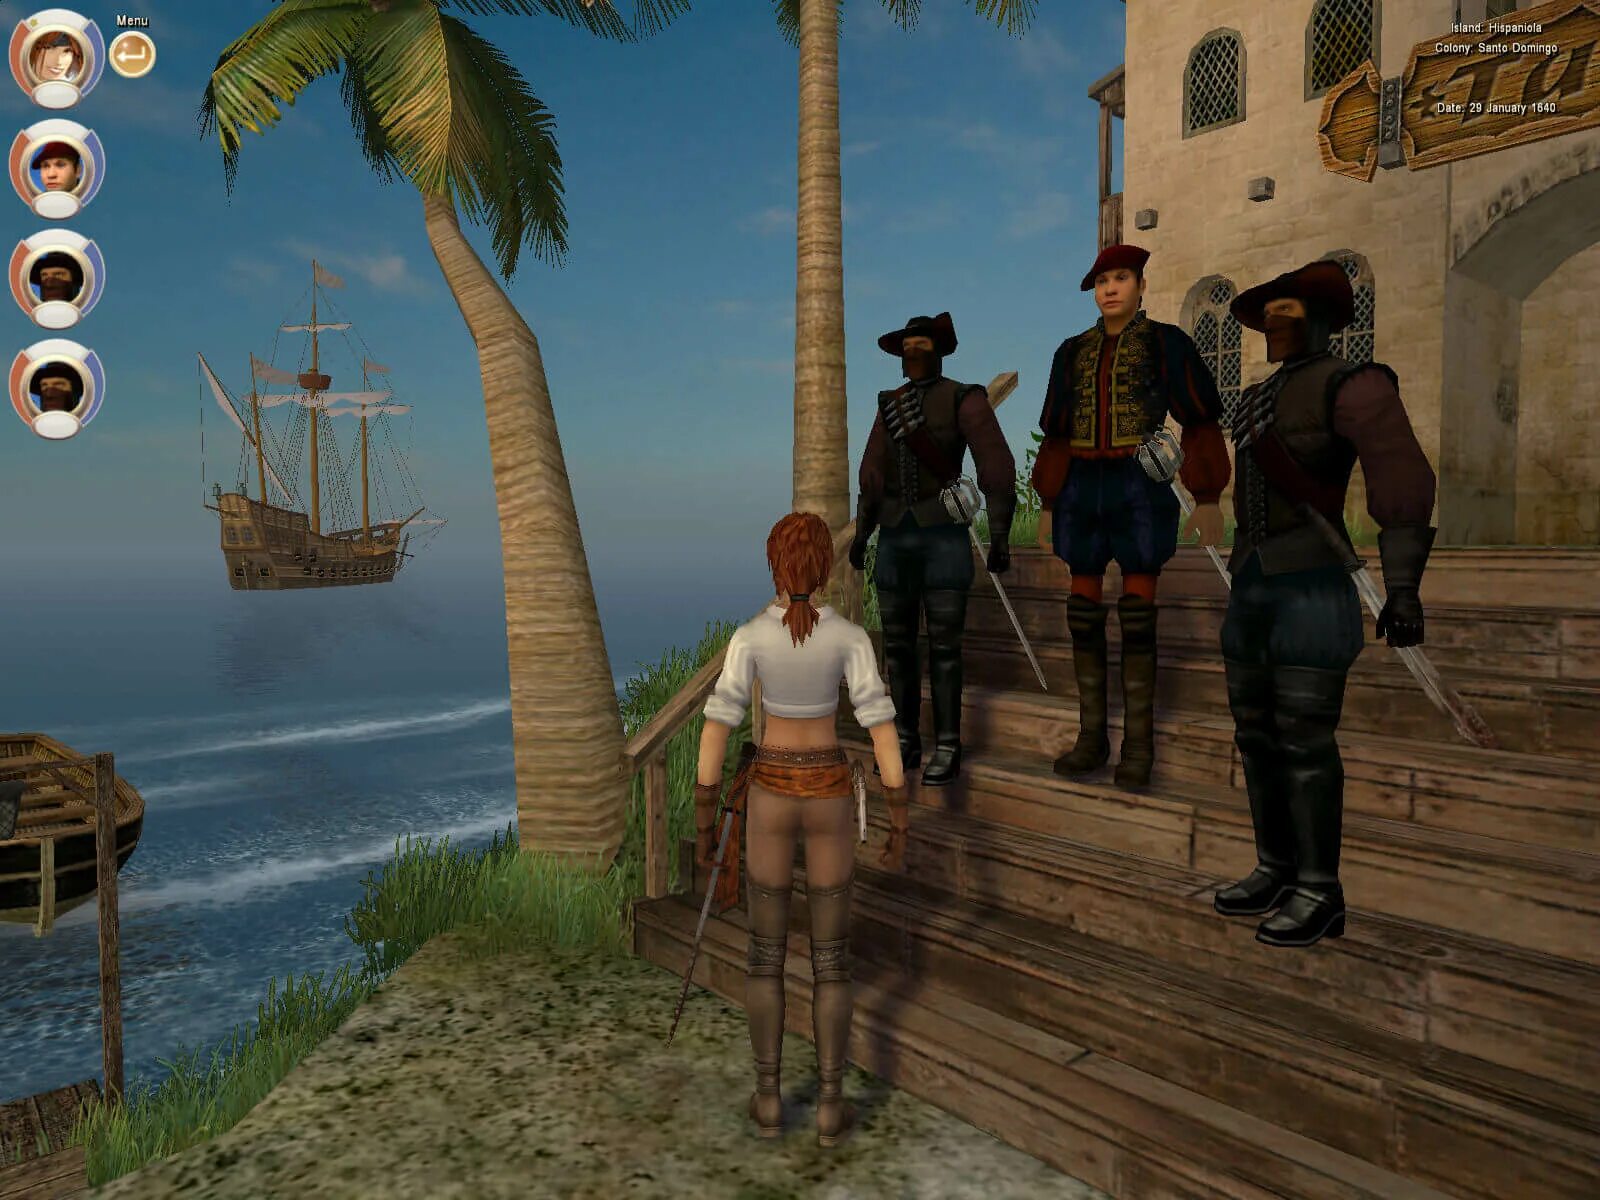 Корсары 3 пираты Карибского моря. Корсары III (2005). Age of Pirates: Caribbean Tales игра. Натаниэль Хаук Корсары 2.